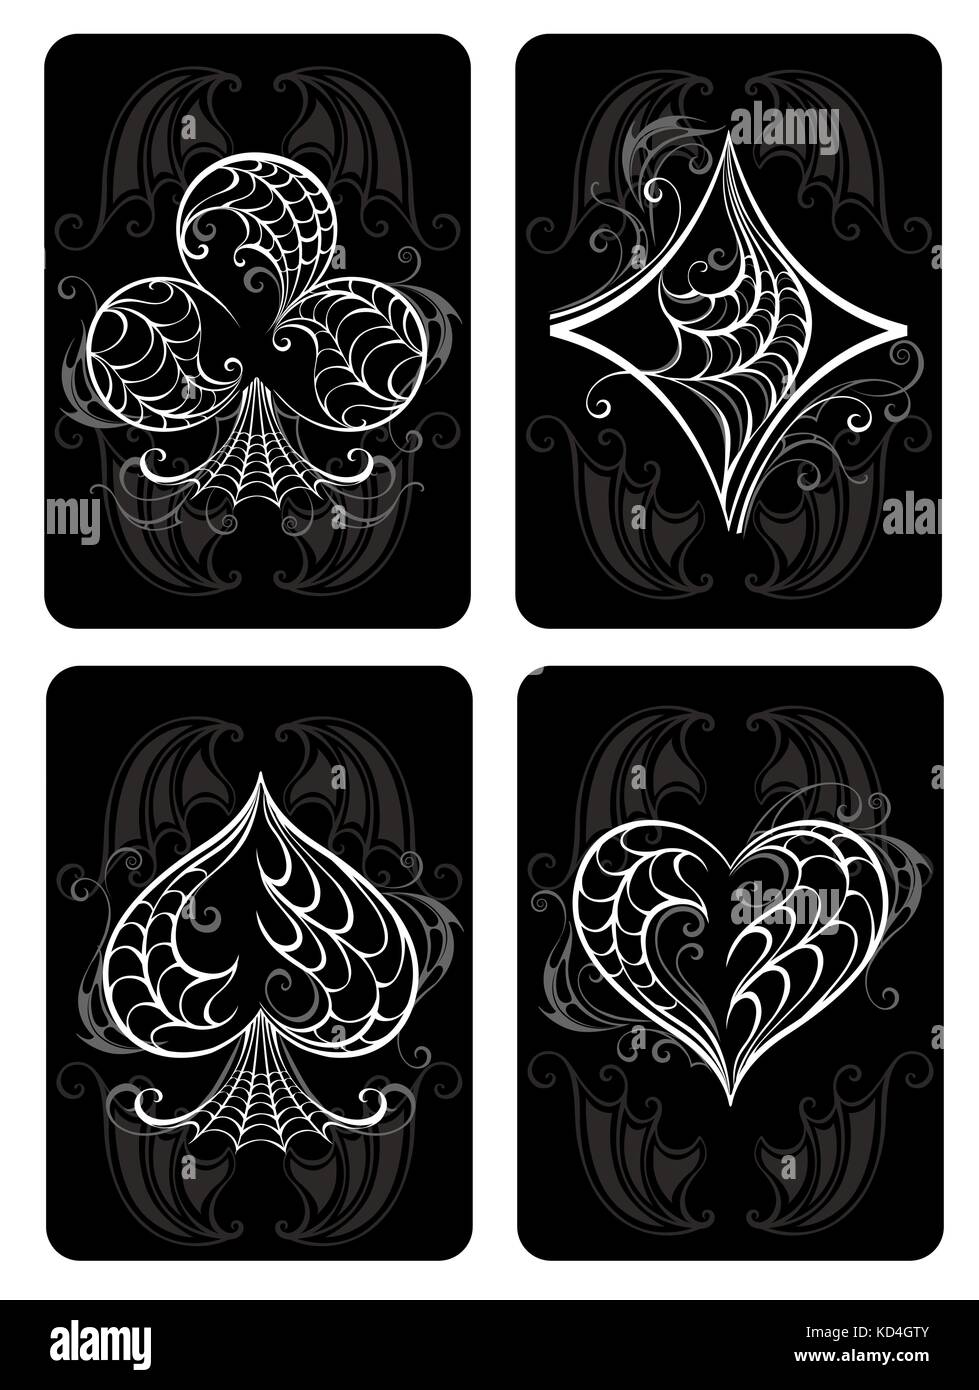 Il nero giocando a carte con simboli bianchi. i simboli delle carte da gioco. i simboli delle carte da gioco, cuore, diamante, spade e club. Illustrazione Vettoriale